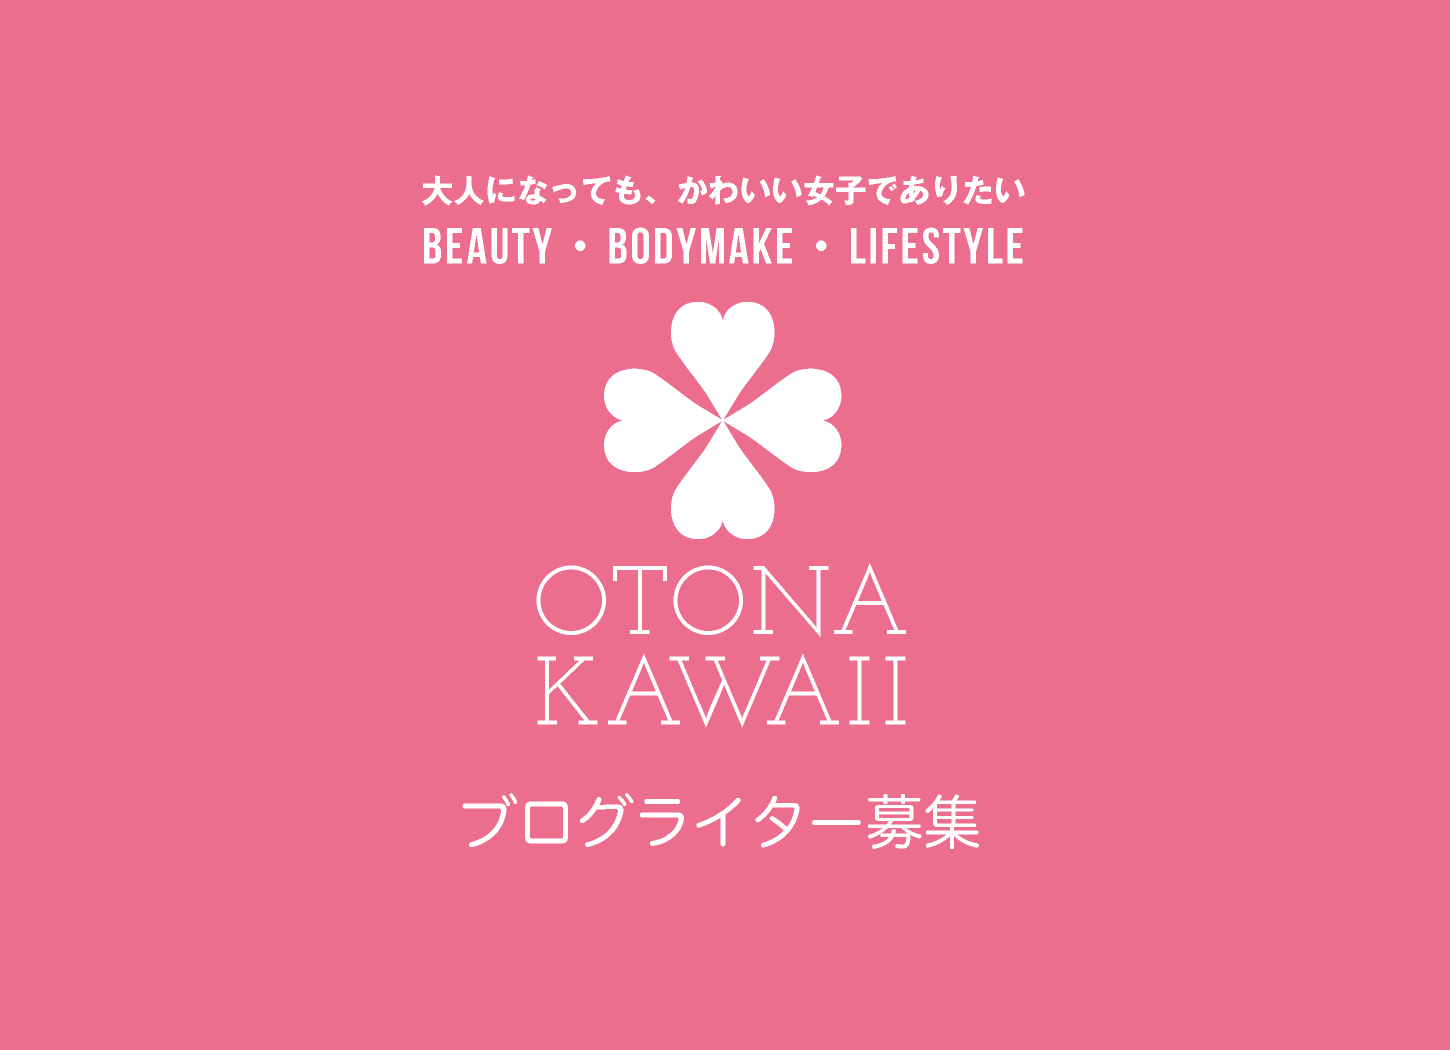 ブログライター募集｜otona-kawaii.com｜大人になっても、かわいい女子でありたい｜Beauty・Bodymake・Lifestyle｜美容・健康・ライフスタイル